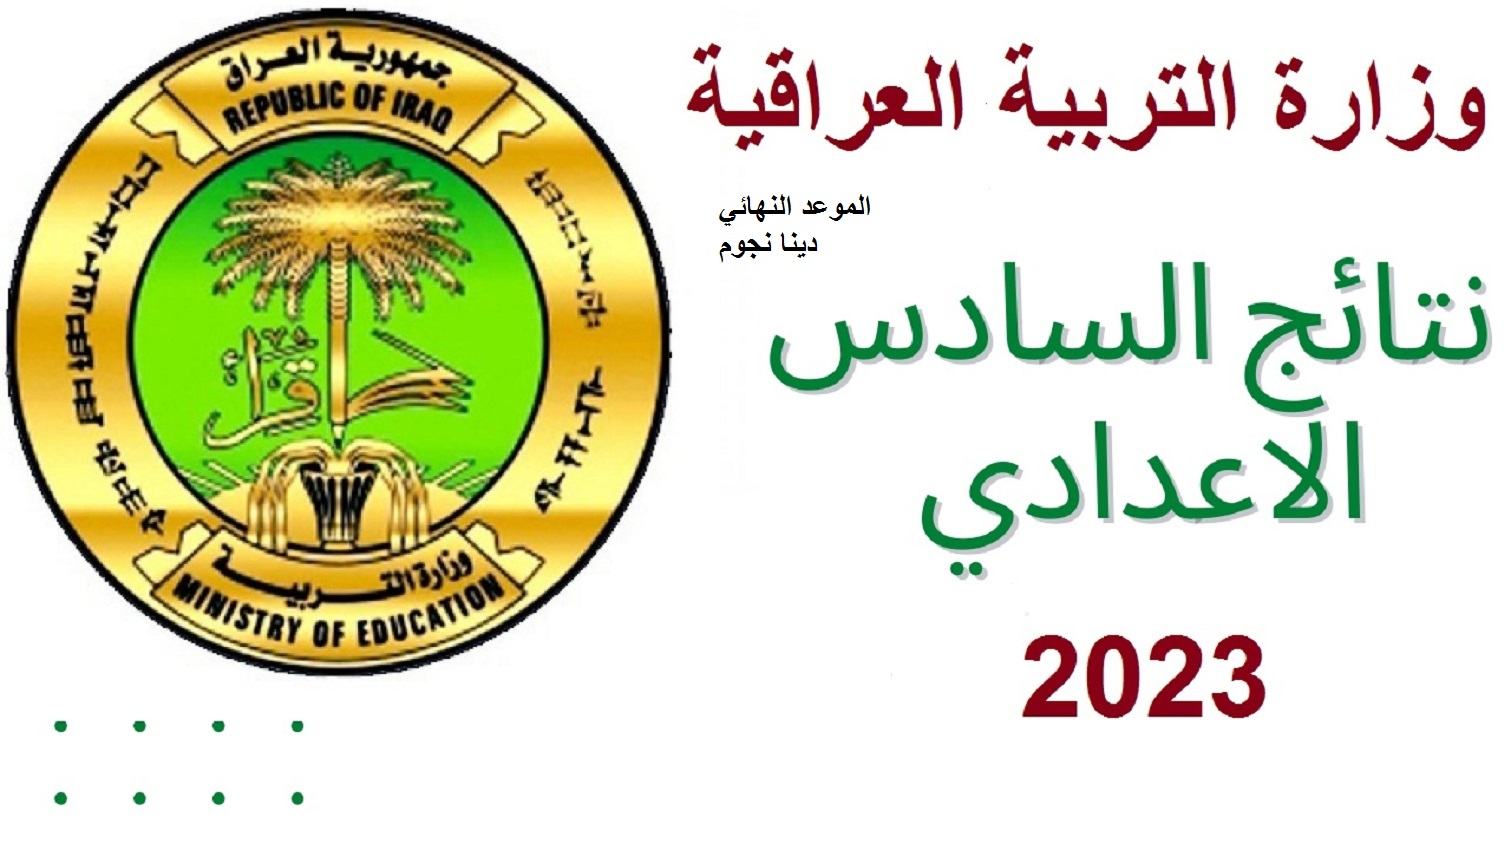 بعد قليل .. نتائج السادس الإعدادي 2023 الدور الأول للحصول عليها بالاسم من وزارة التعليم العراقية